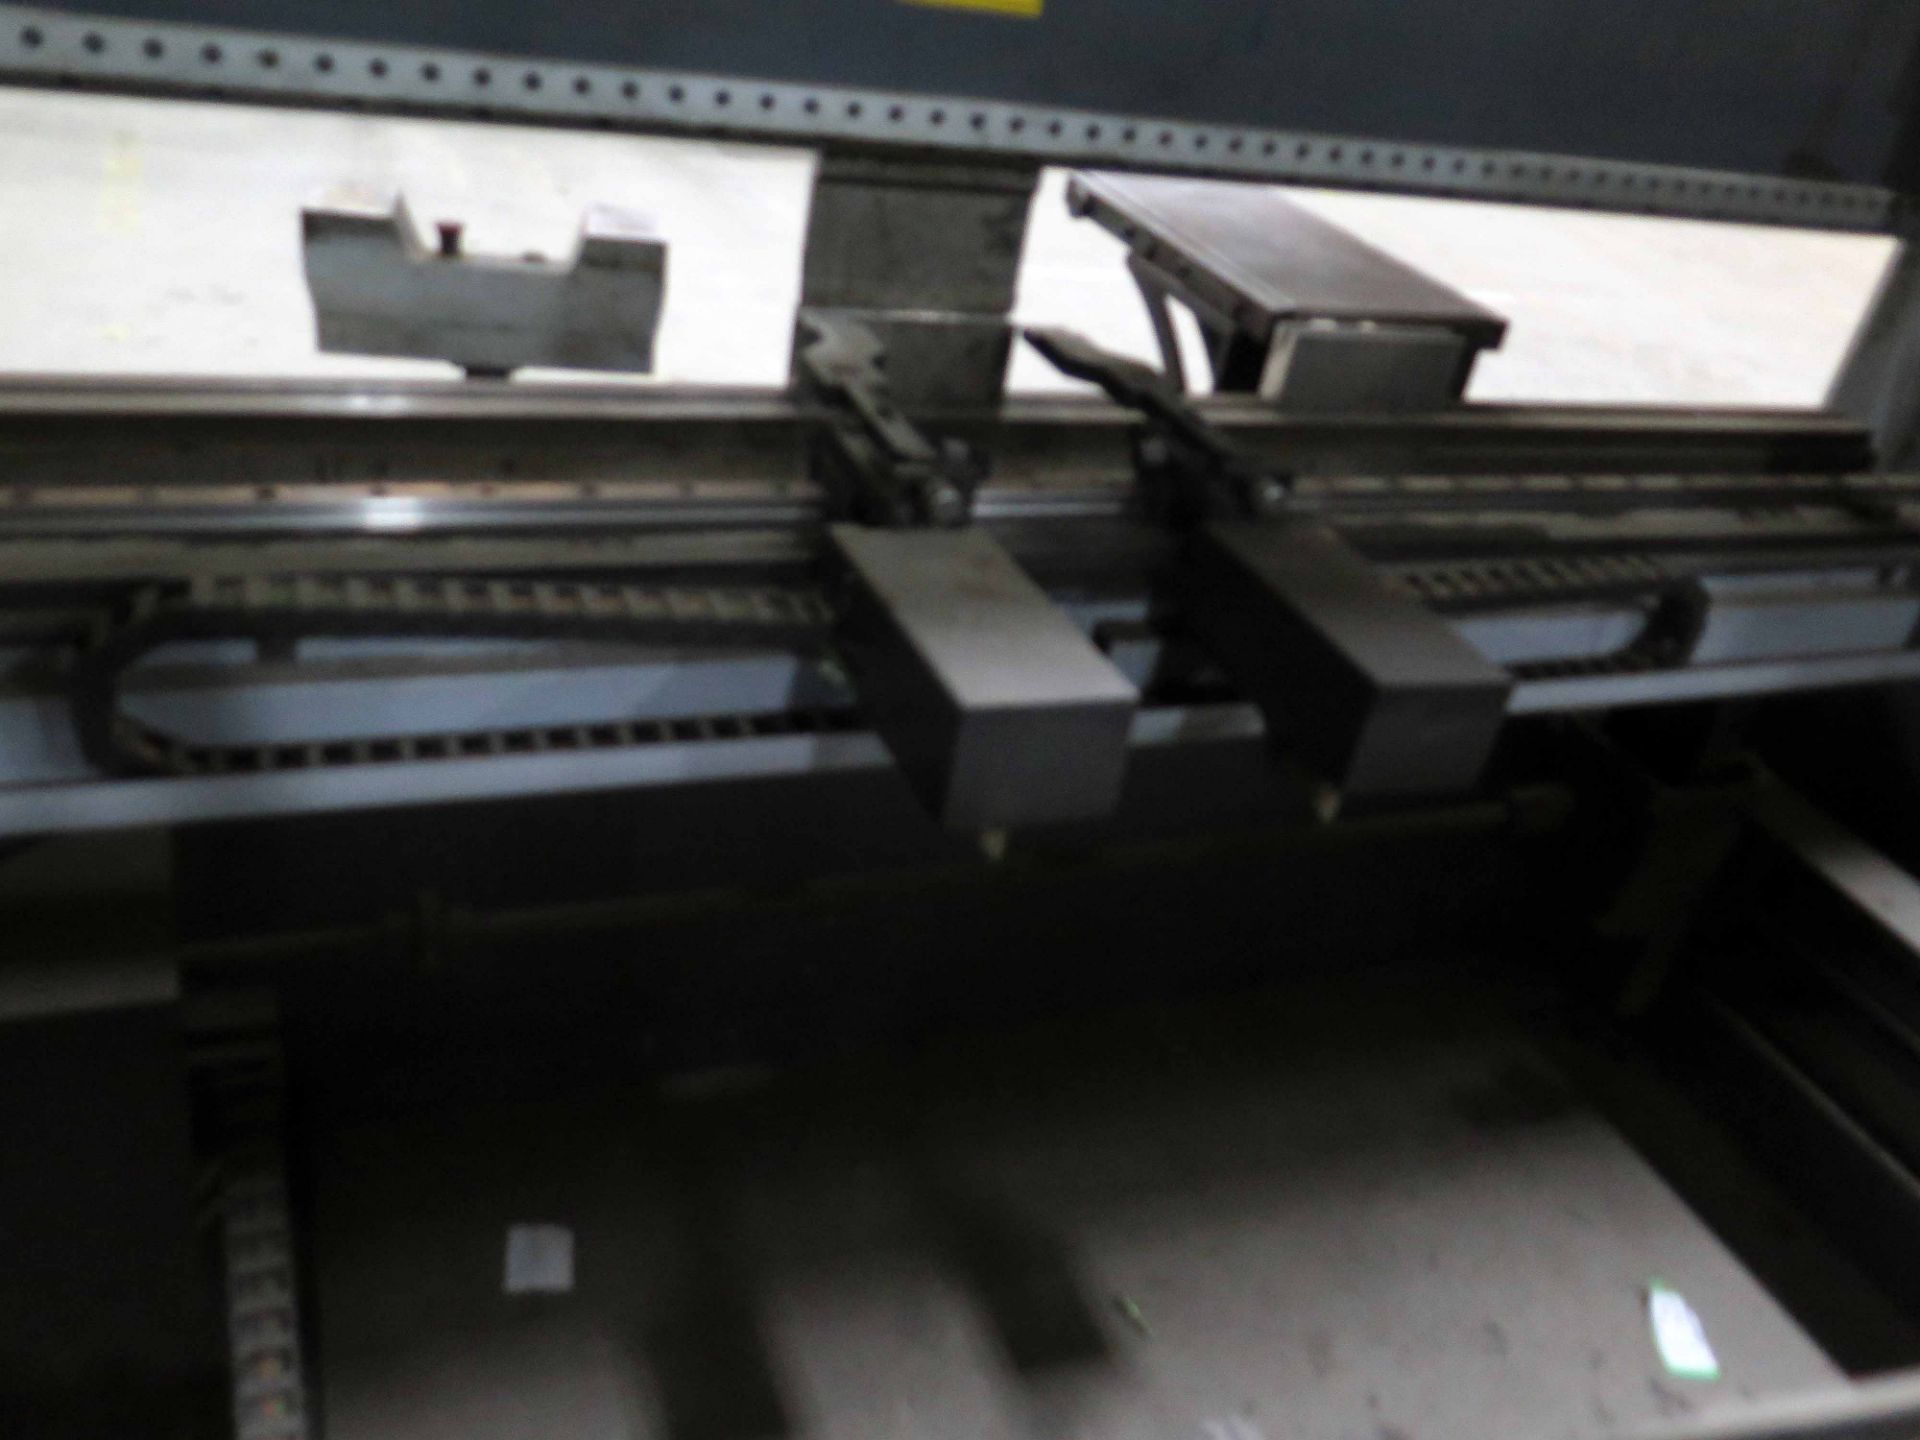 CNC PRESSBRAKE, JMT 148.5 T. X 120" MDL. JM-s 10150, , new 2014, Delem DA66T touch screen 6-axis CNC - Image 4 of 11